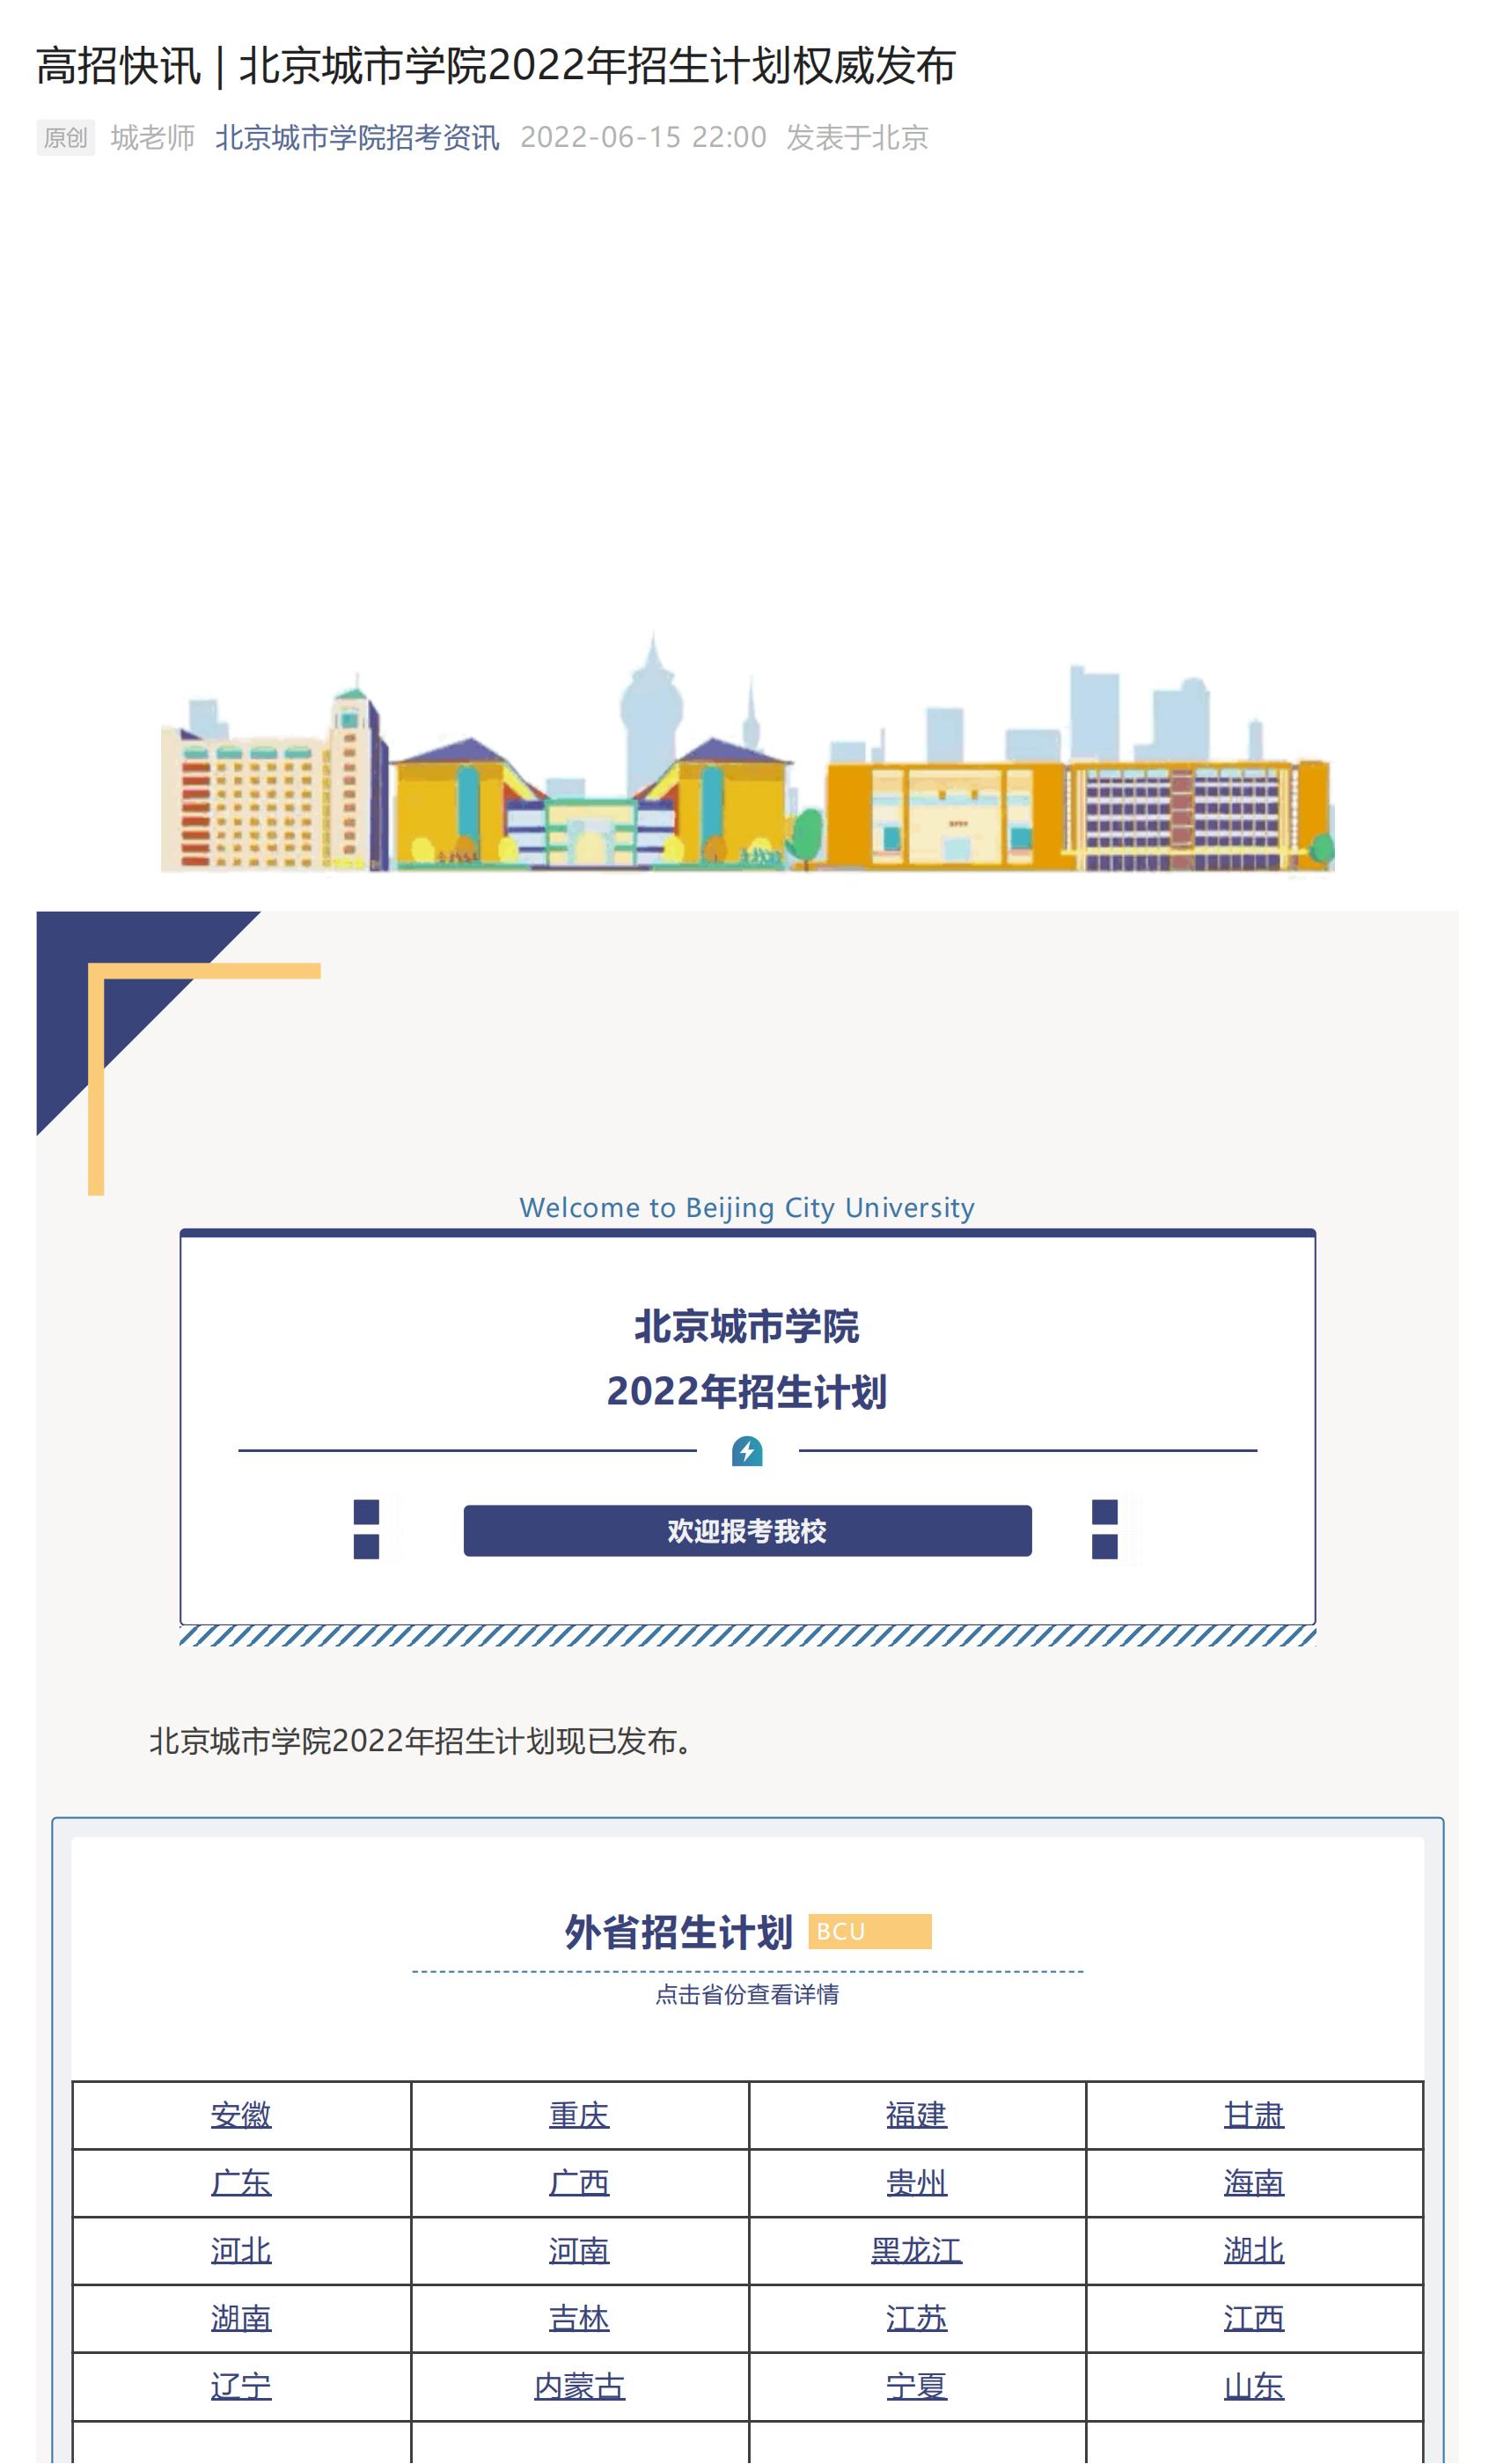 高招快讯 _ 北京城市学院2022年招生计划权威发布_00.jpg